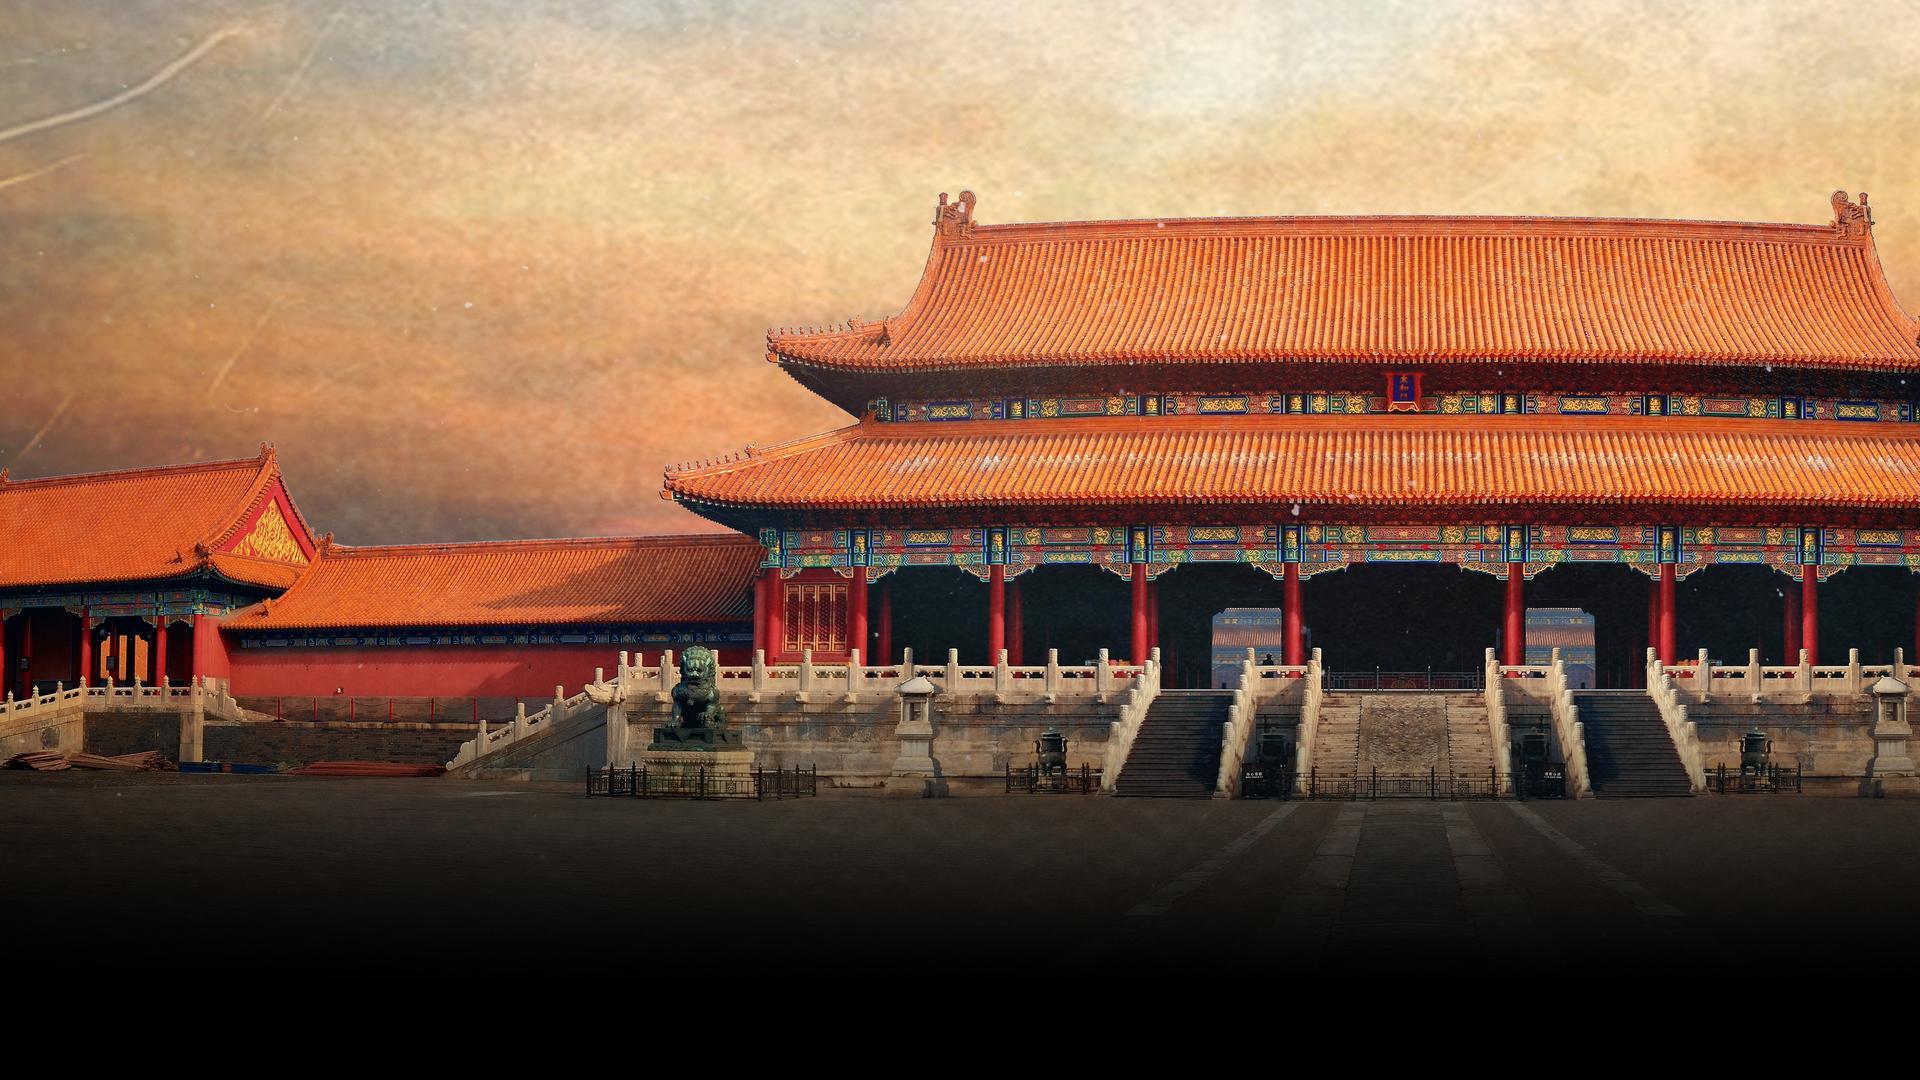 China's Forbidden City